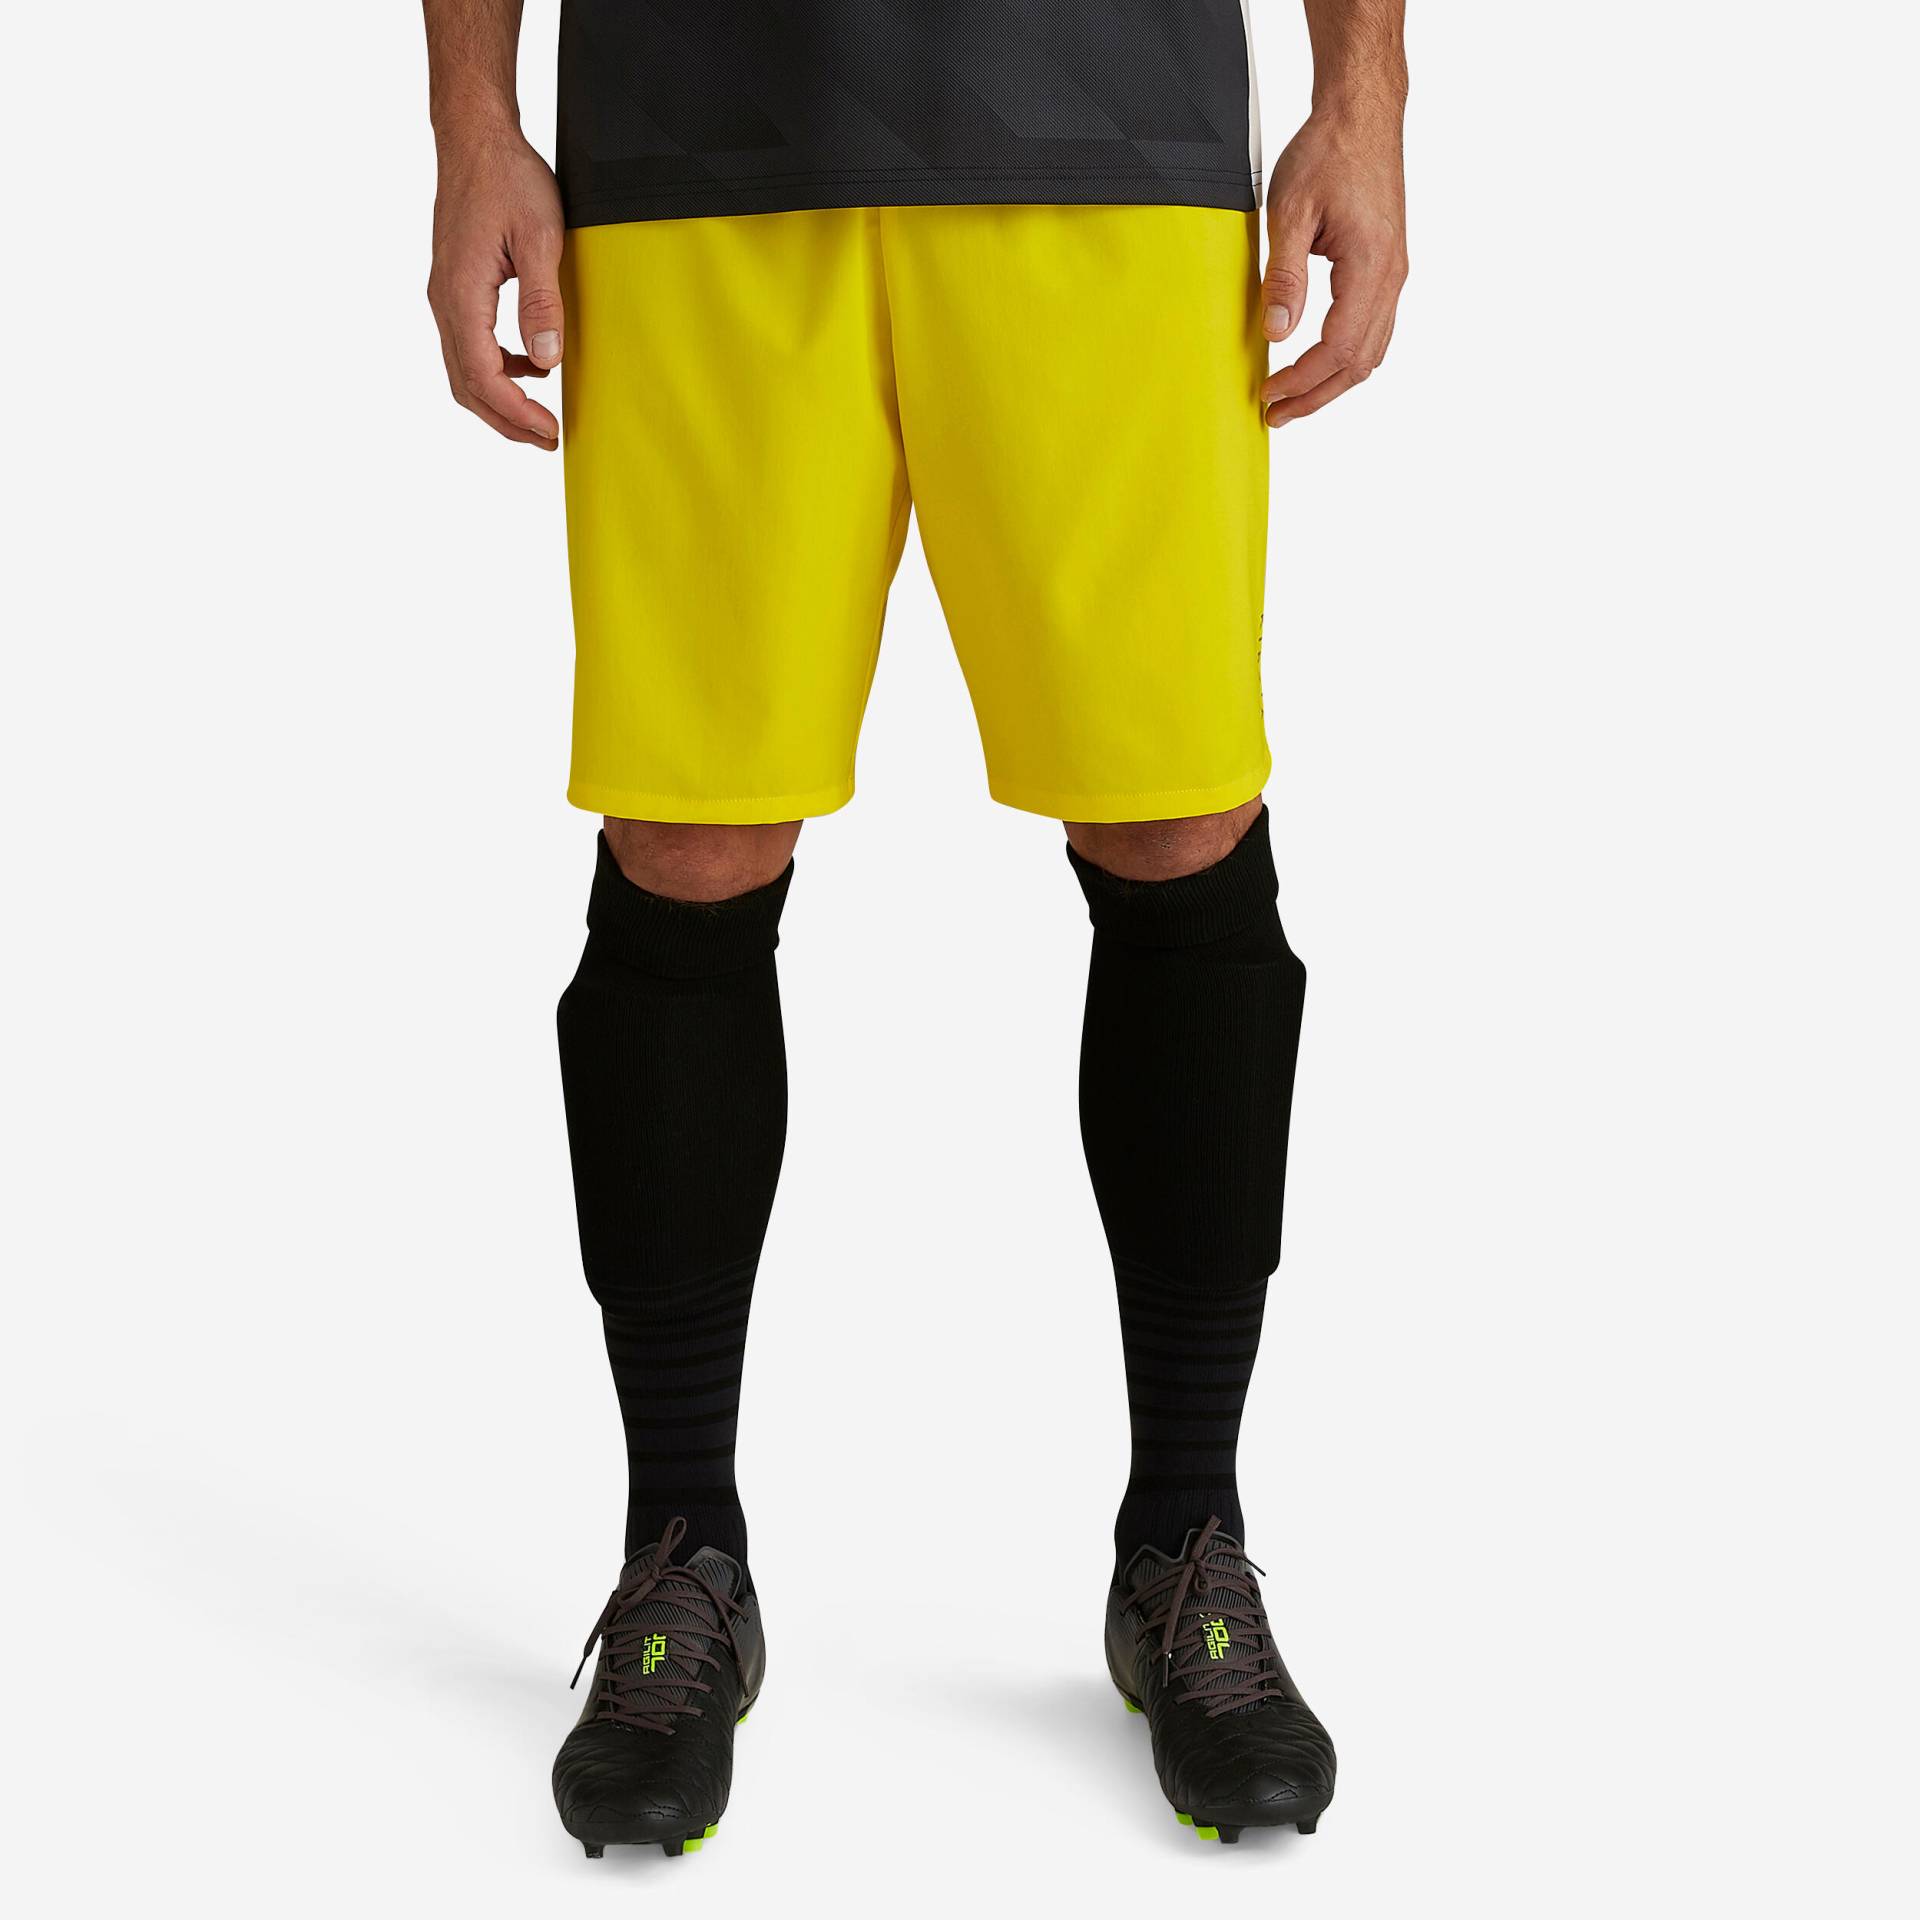 Damen/Herren Fussball Shorts Viralto gelb von KIPSTA